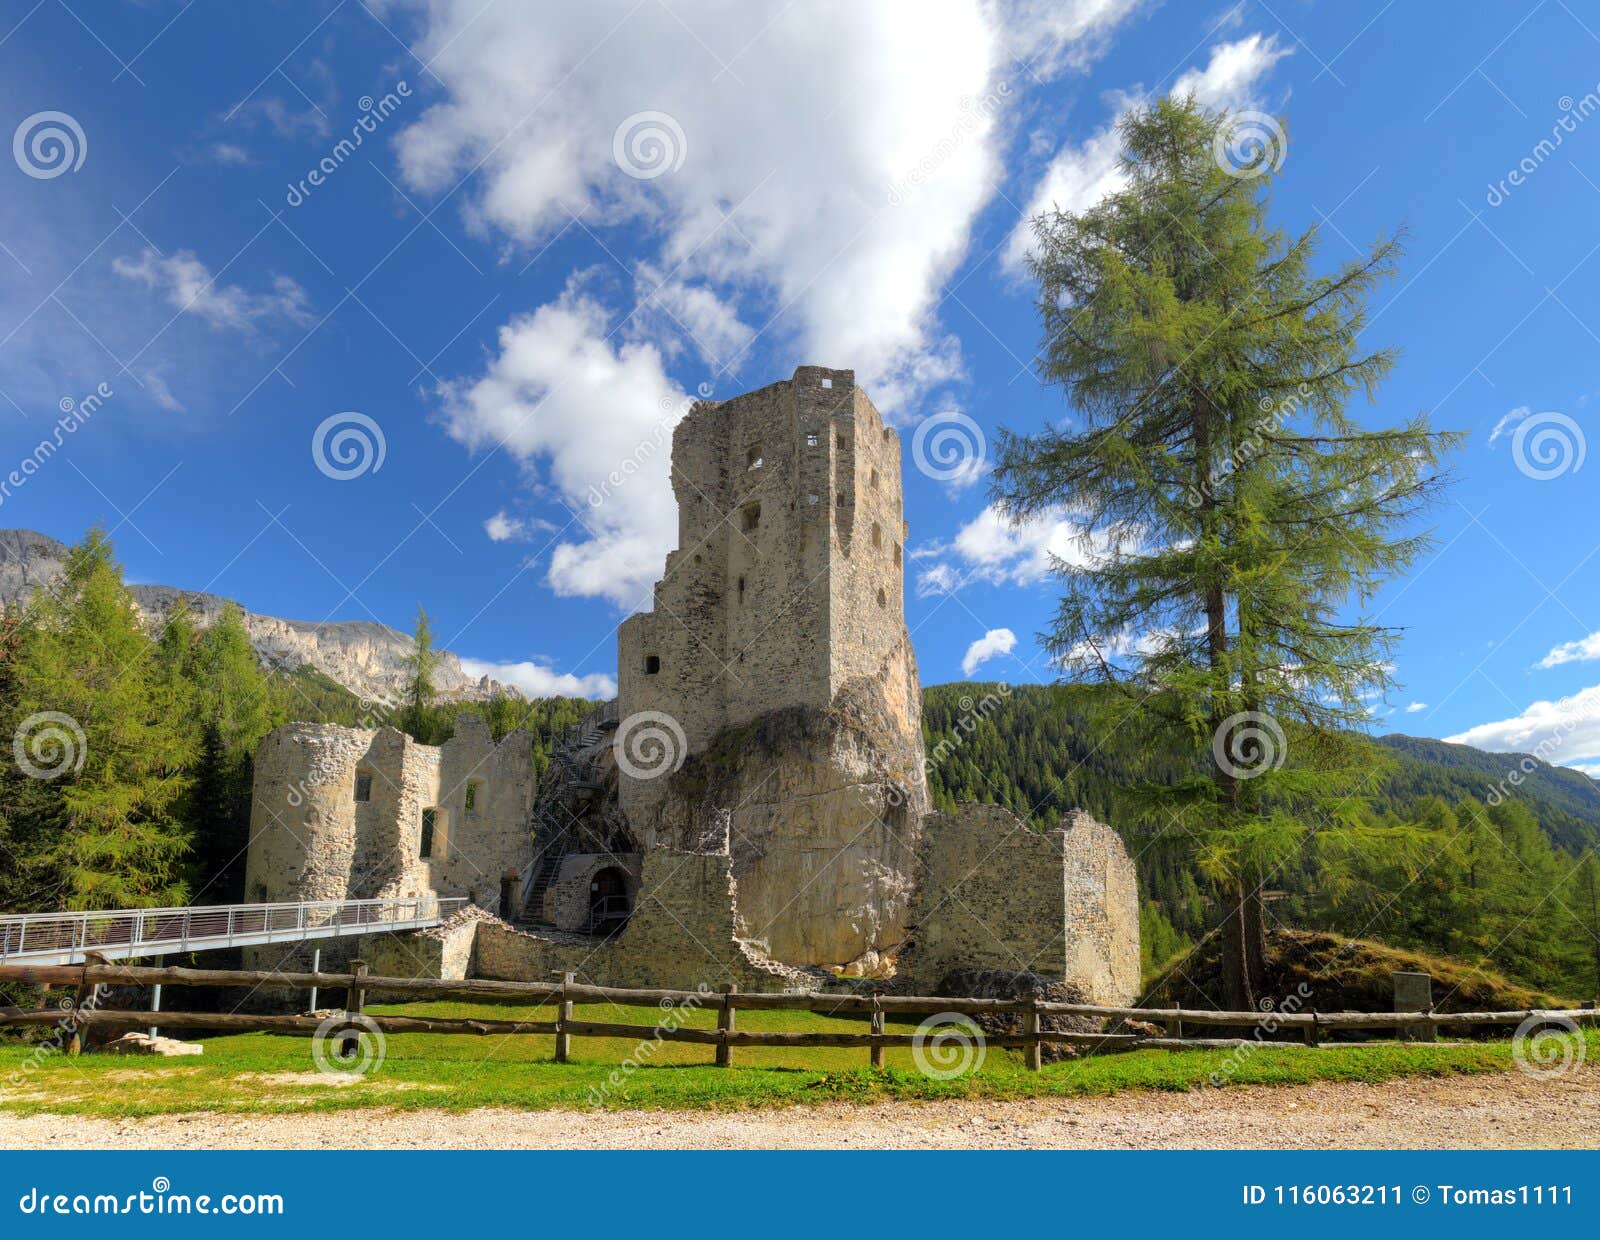 castello or castle buchenstein under col di lana, livinallongo,